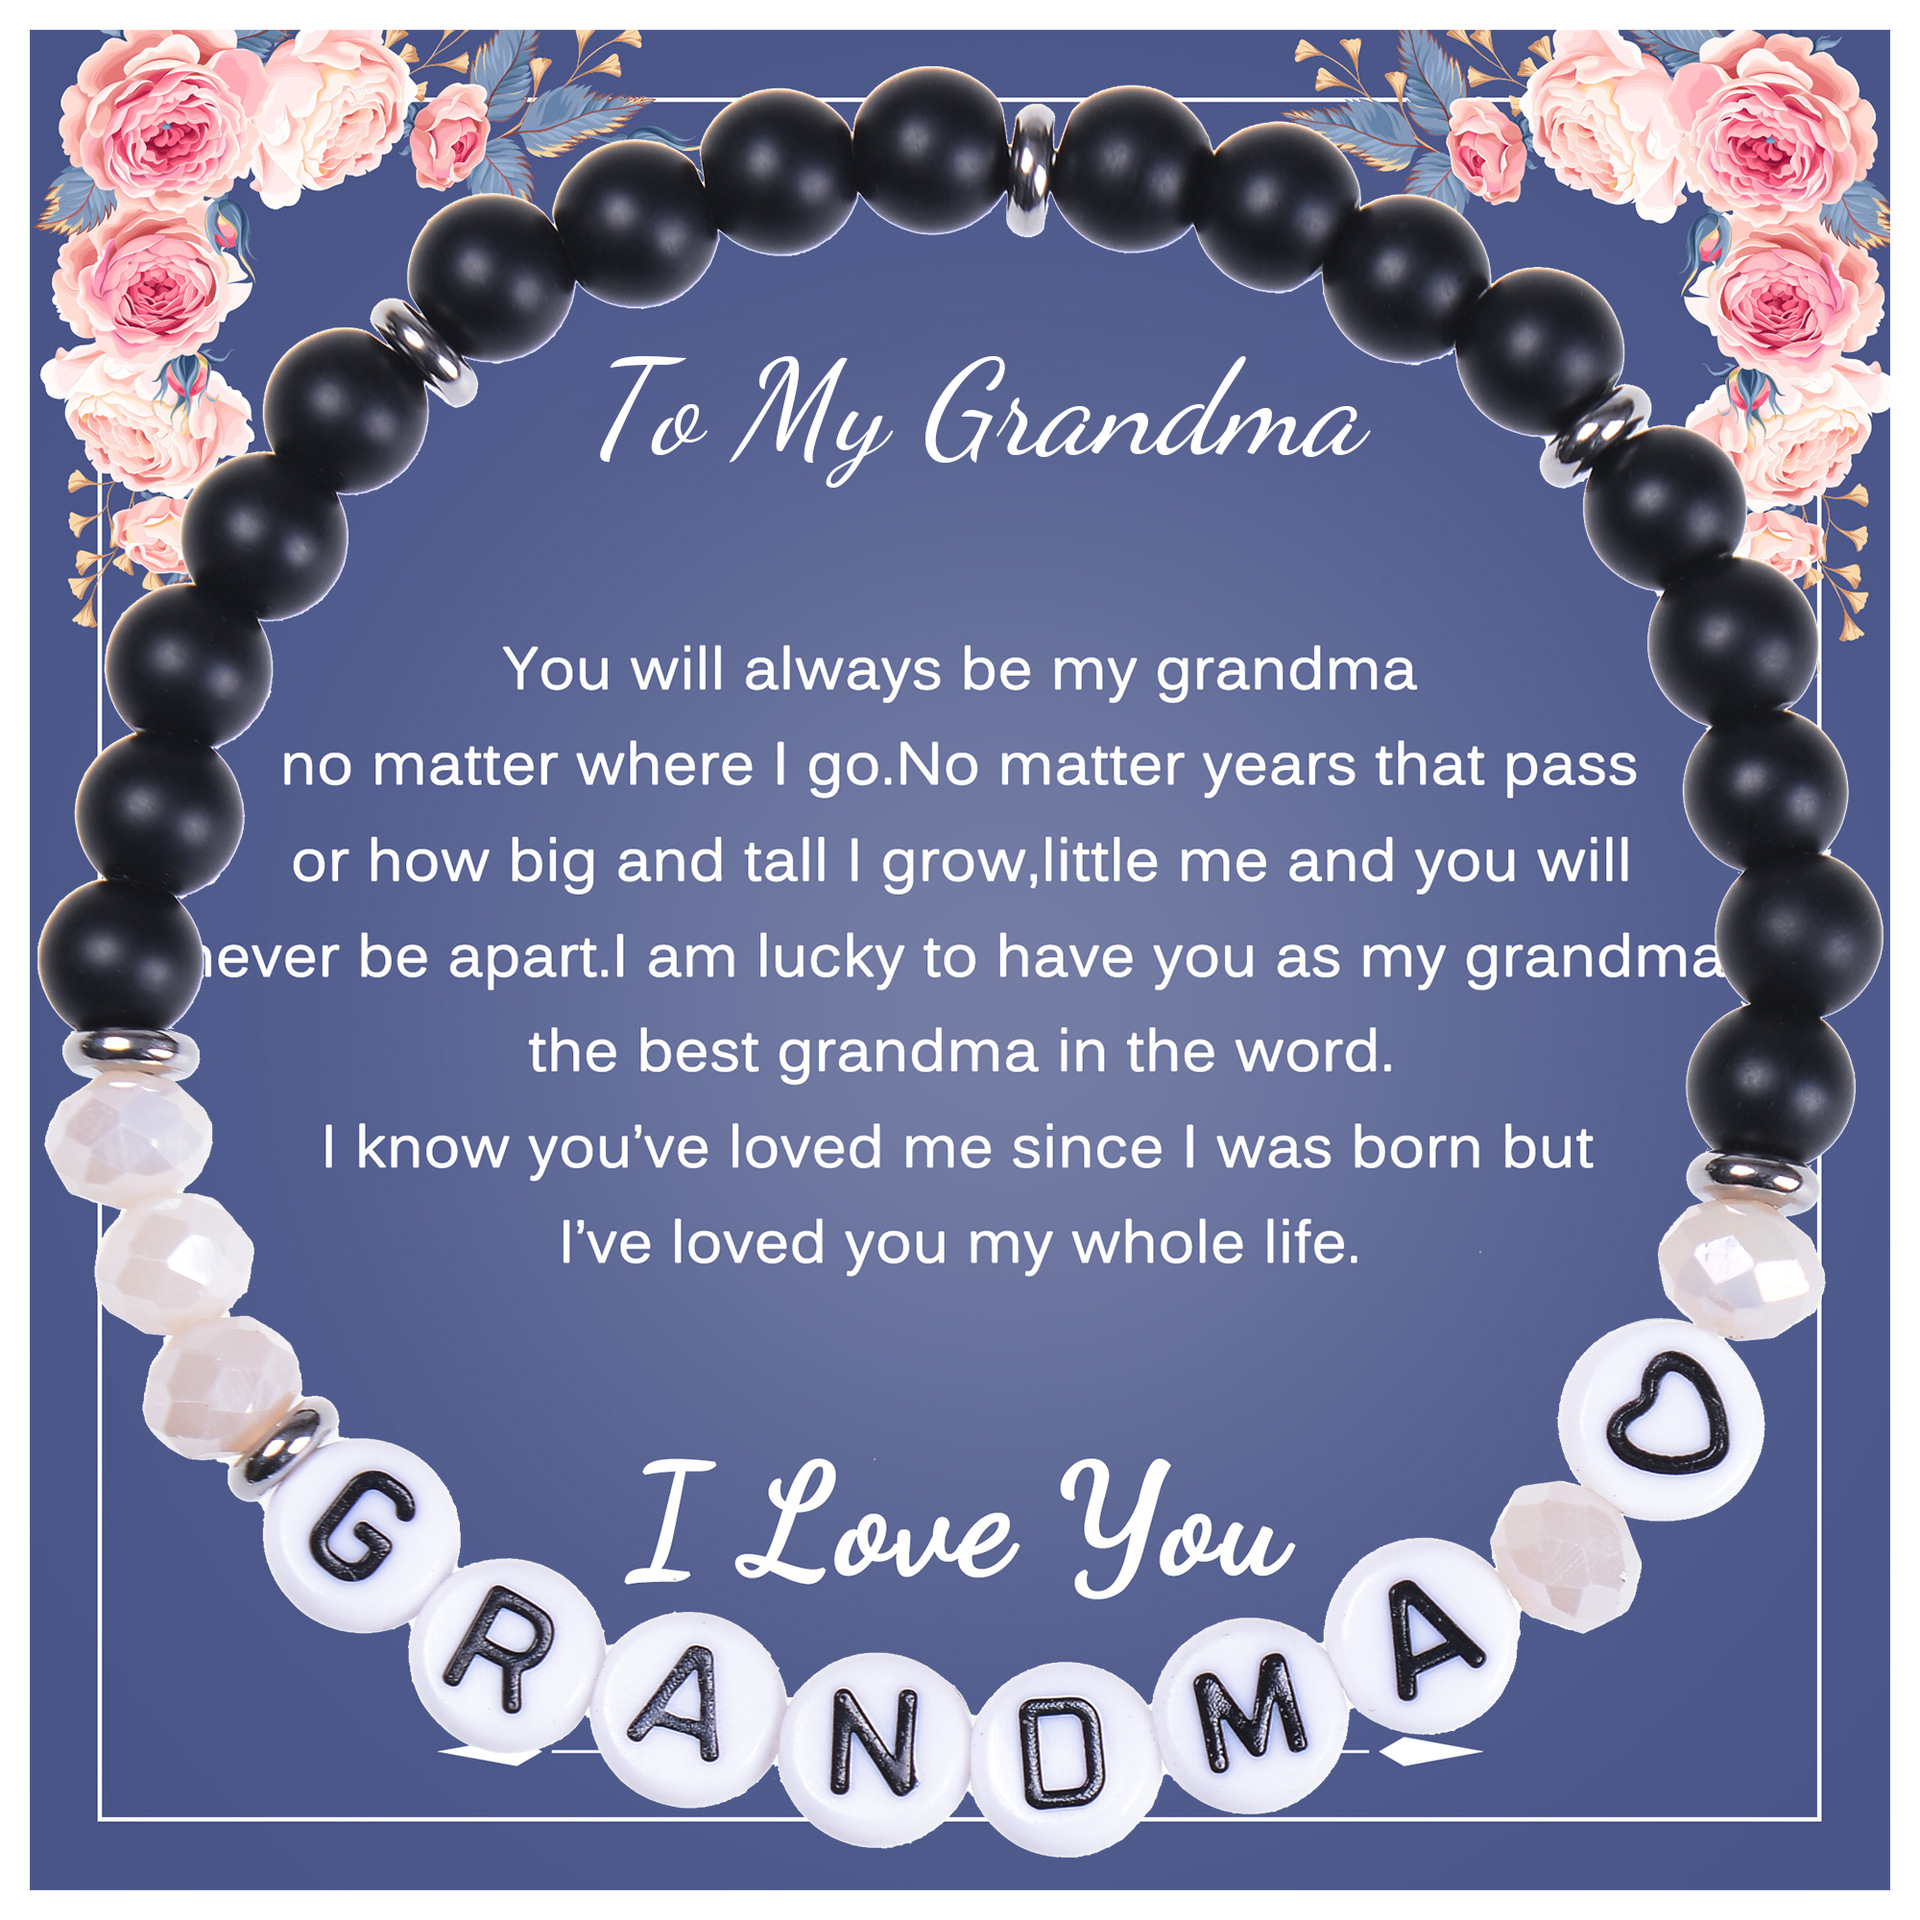 1:To My Grandma